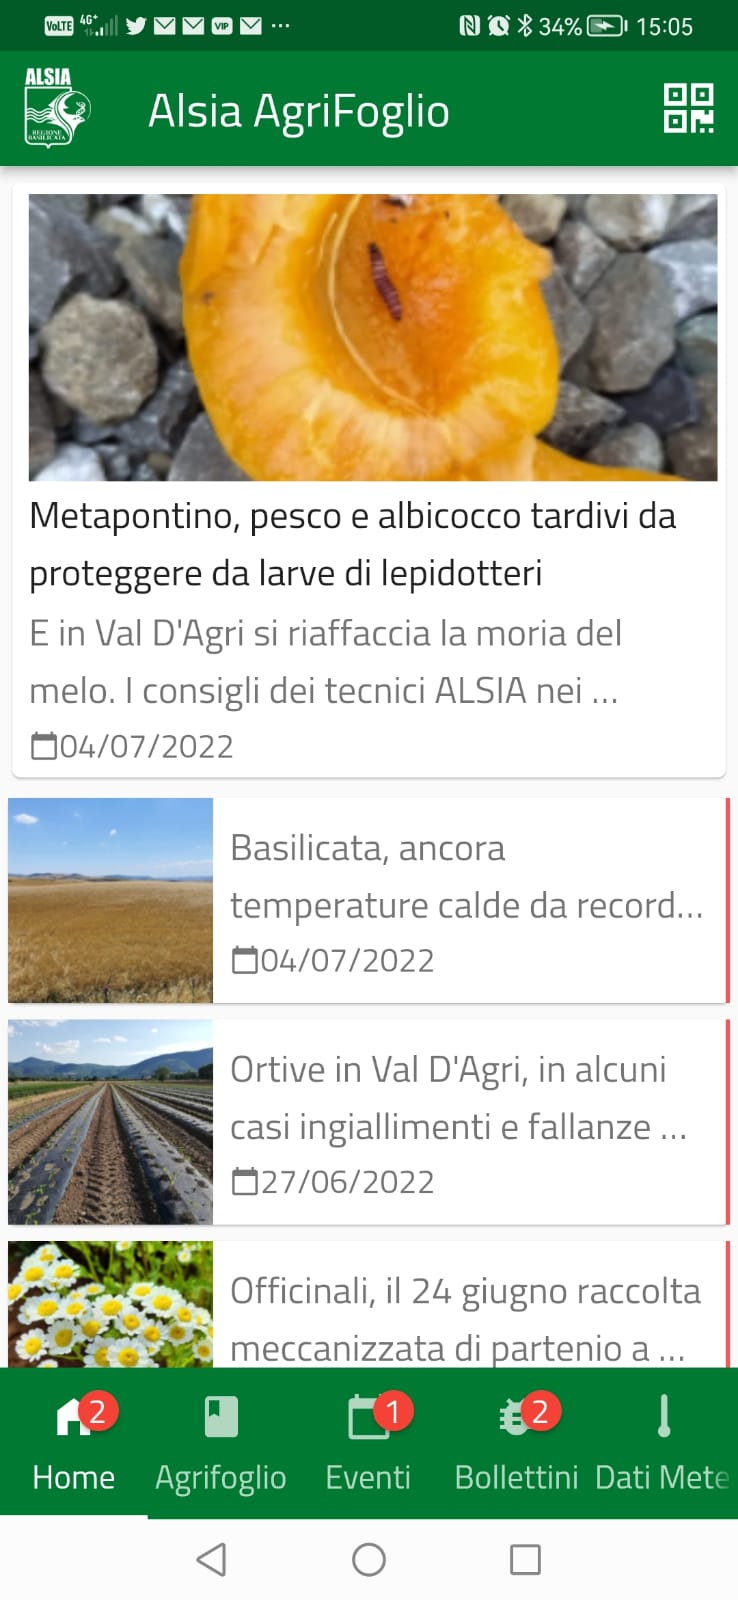 La schermata principale della app ALSIA